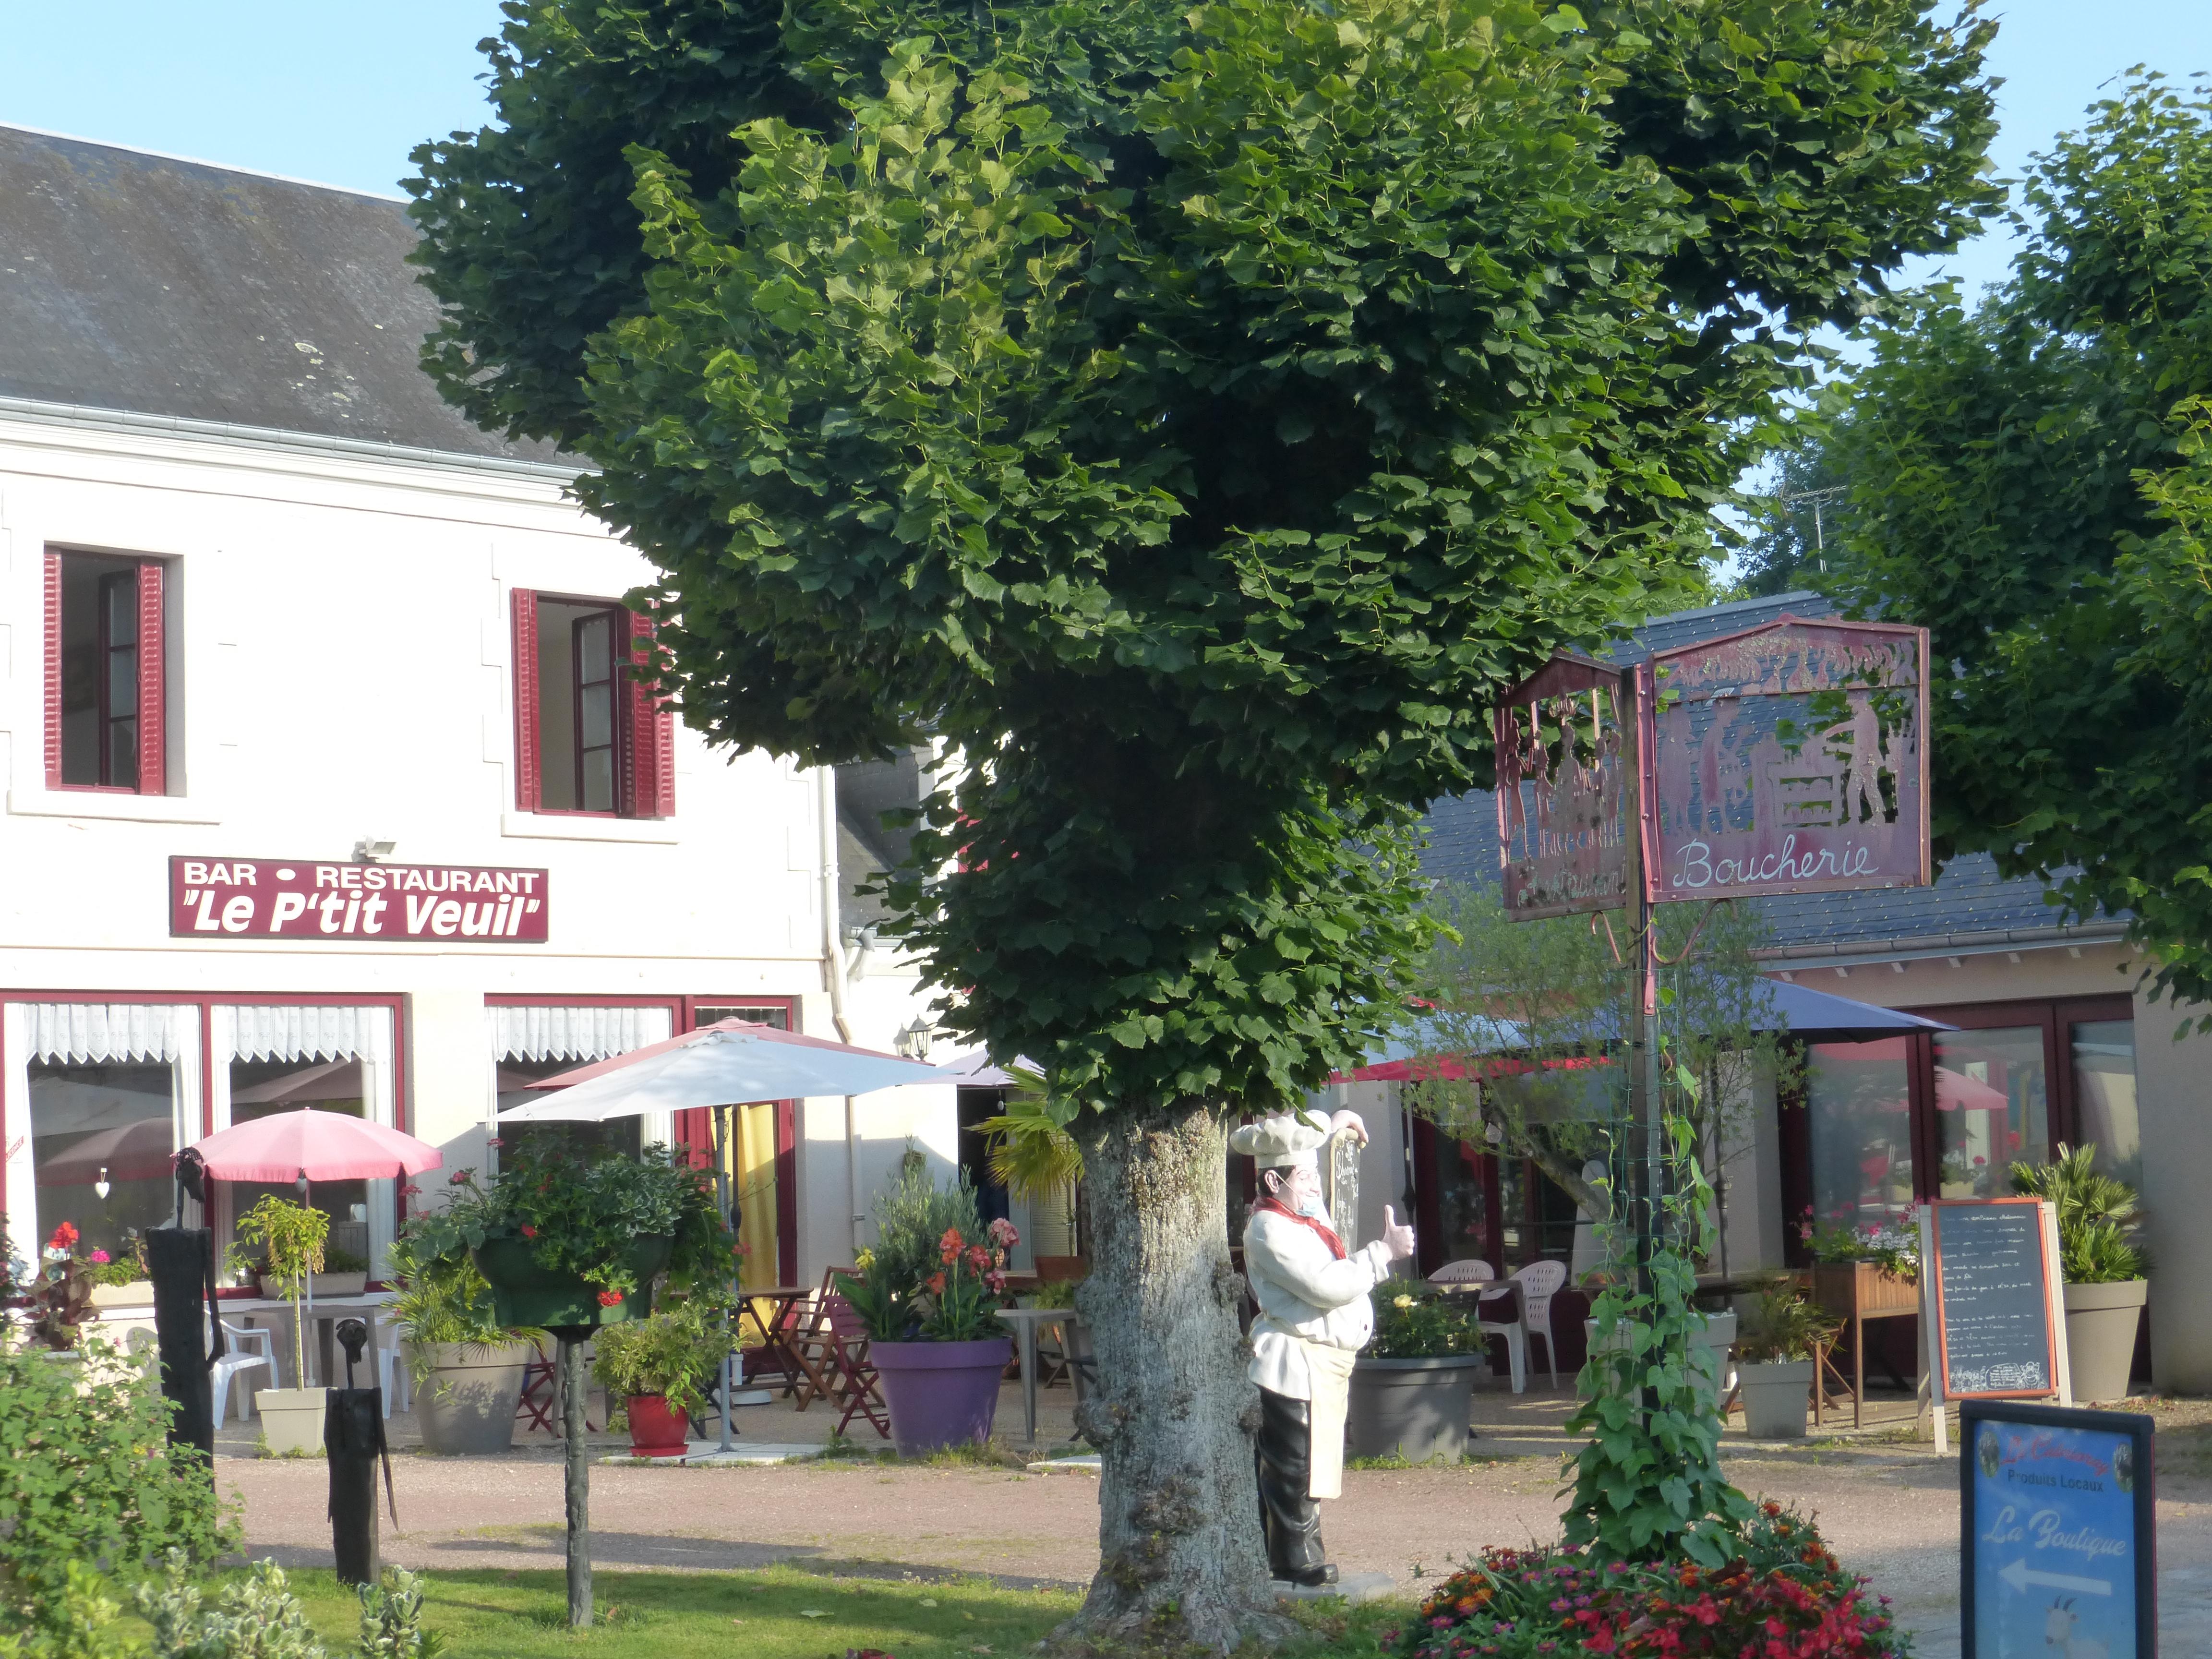 Bar-restaurant situé dans une commune rurale et touristique au Nord de l'Indre entre Touraine et Sologne, à proximité des parcours de randonnée et des châteaux de la Loire et du zoo de Beauval. C'est une commune labellisée "village fleuri Quatre Fleurs", dynamique, porteuse de projets et tournée vers l'avenir. Elle possède son école.
Le bar-restaurant est propriété de la commune depuis 30 ans environ. C'est un lieu de vie fédérateur qui permet à une clientèle régulière familiale et de passage de partager un moment convivial.
Le couple locataire actuel a cessé son activité au 31/12/2023. Pendant les 8 année de son exercice,, il a su développer et fidéliser sa clientèle.
Cet établissement est idéalement situé pour développer une structure florissante.

DESCRIPTION DU BIEN :
Superficie de 400 m2 environ composé :
- au RDC d'une partie bar-restaurant de 200m2, comprenant deux salles d'une capacité chacune de 25 couverts
- A l'étage, d'une partie habitation de 200m2, en bon état d'entretien avec accès séparé de la partie commerciale.
Ses caractéristiques :
- Cuisine entièrement équipée avec accès au jardin privé (100m2)
- grande terrasse en façade (25 couverts) - local de rangement
- la licence IV, propriété de la commune, est mise à disposition gracieusement

ATTENTES COMMUNALES
- Convient à un couple de préférence professionnel
- Amplitude horaire d'ouverture du bar en adéquation avec le rythme des festivités locales et le public de proximité et de passage